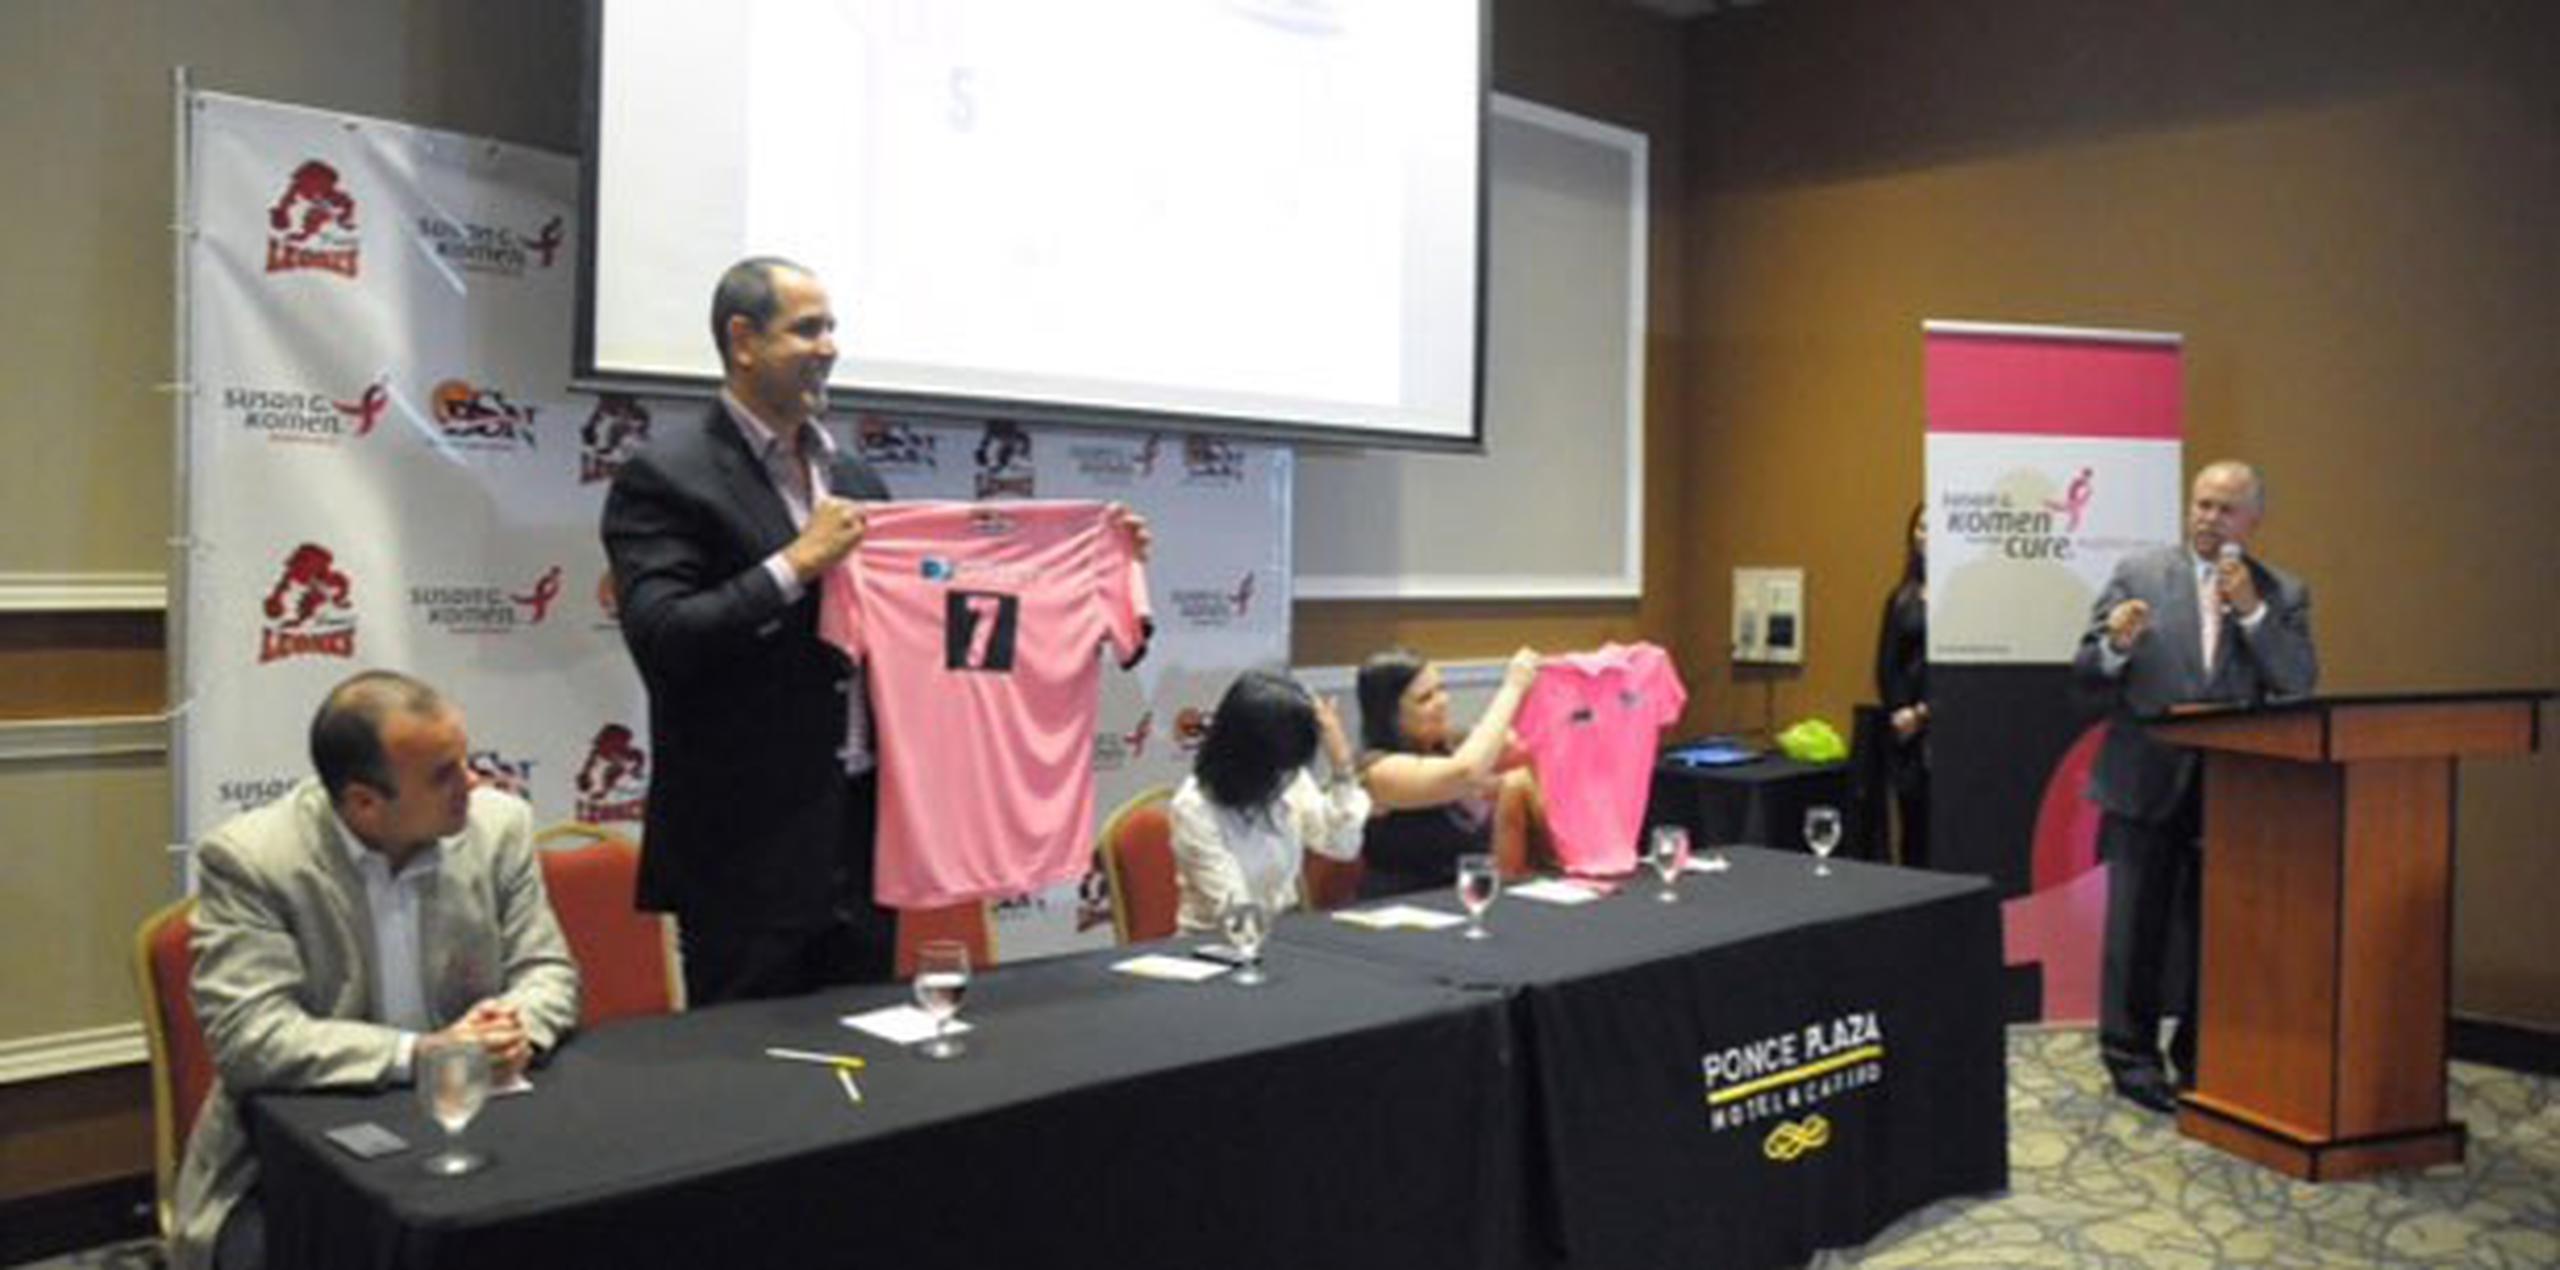 El apoderado de los Leones de Ponce, José Oscar Santiago, muestra una de las camisas con la que su equipo patrocinará la Fundación. (Suministrada / Leones de Ponce)
